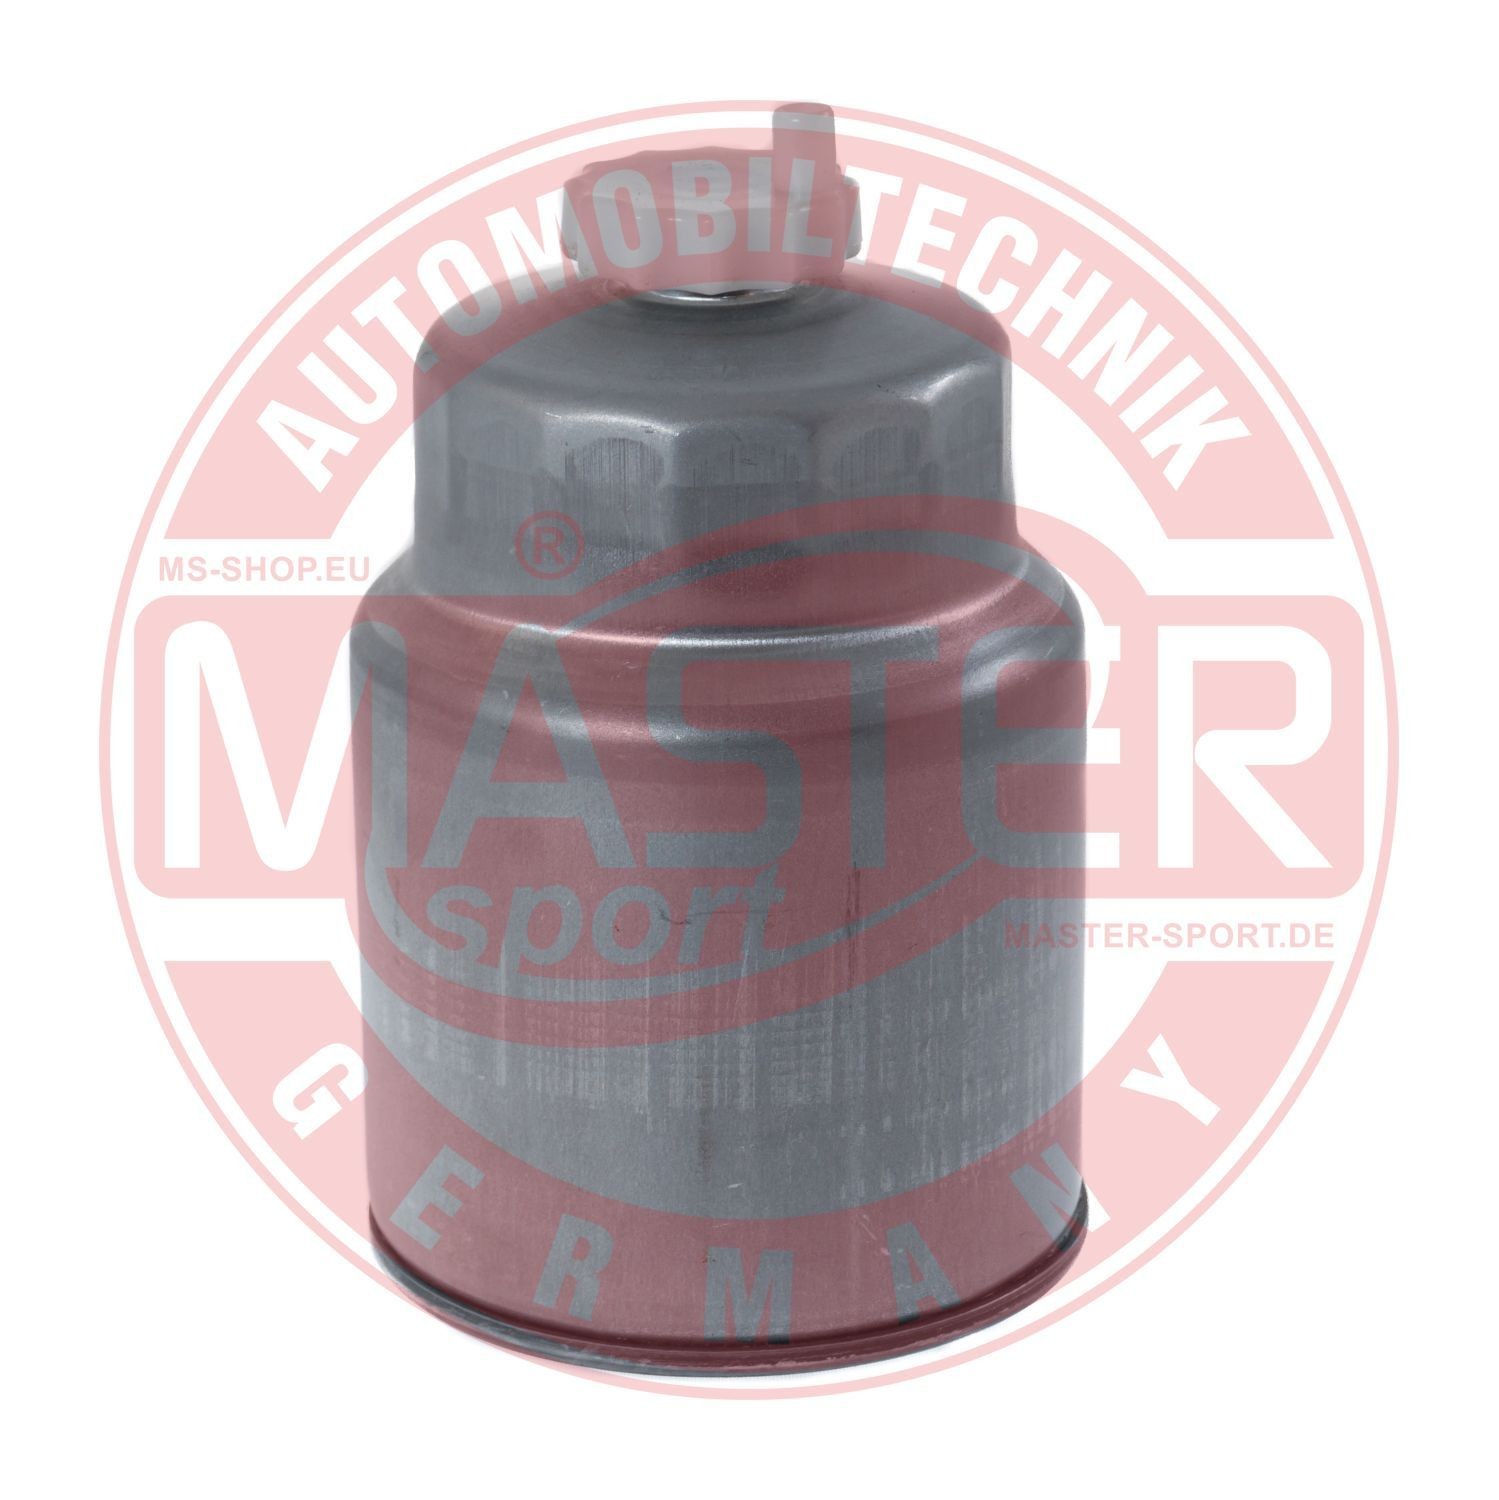 430940220 MASTER-SPORT 940/22-KF-PCS-MS Fuel filter 16400BN303